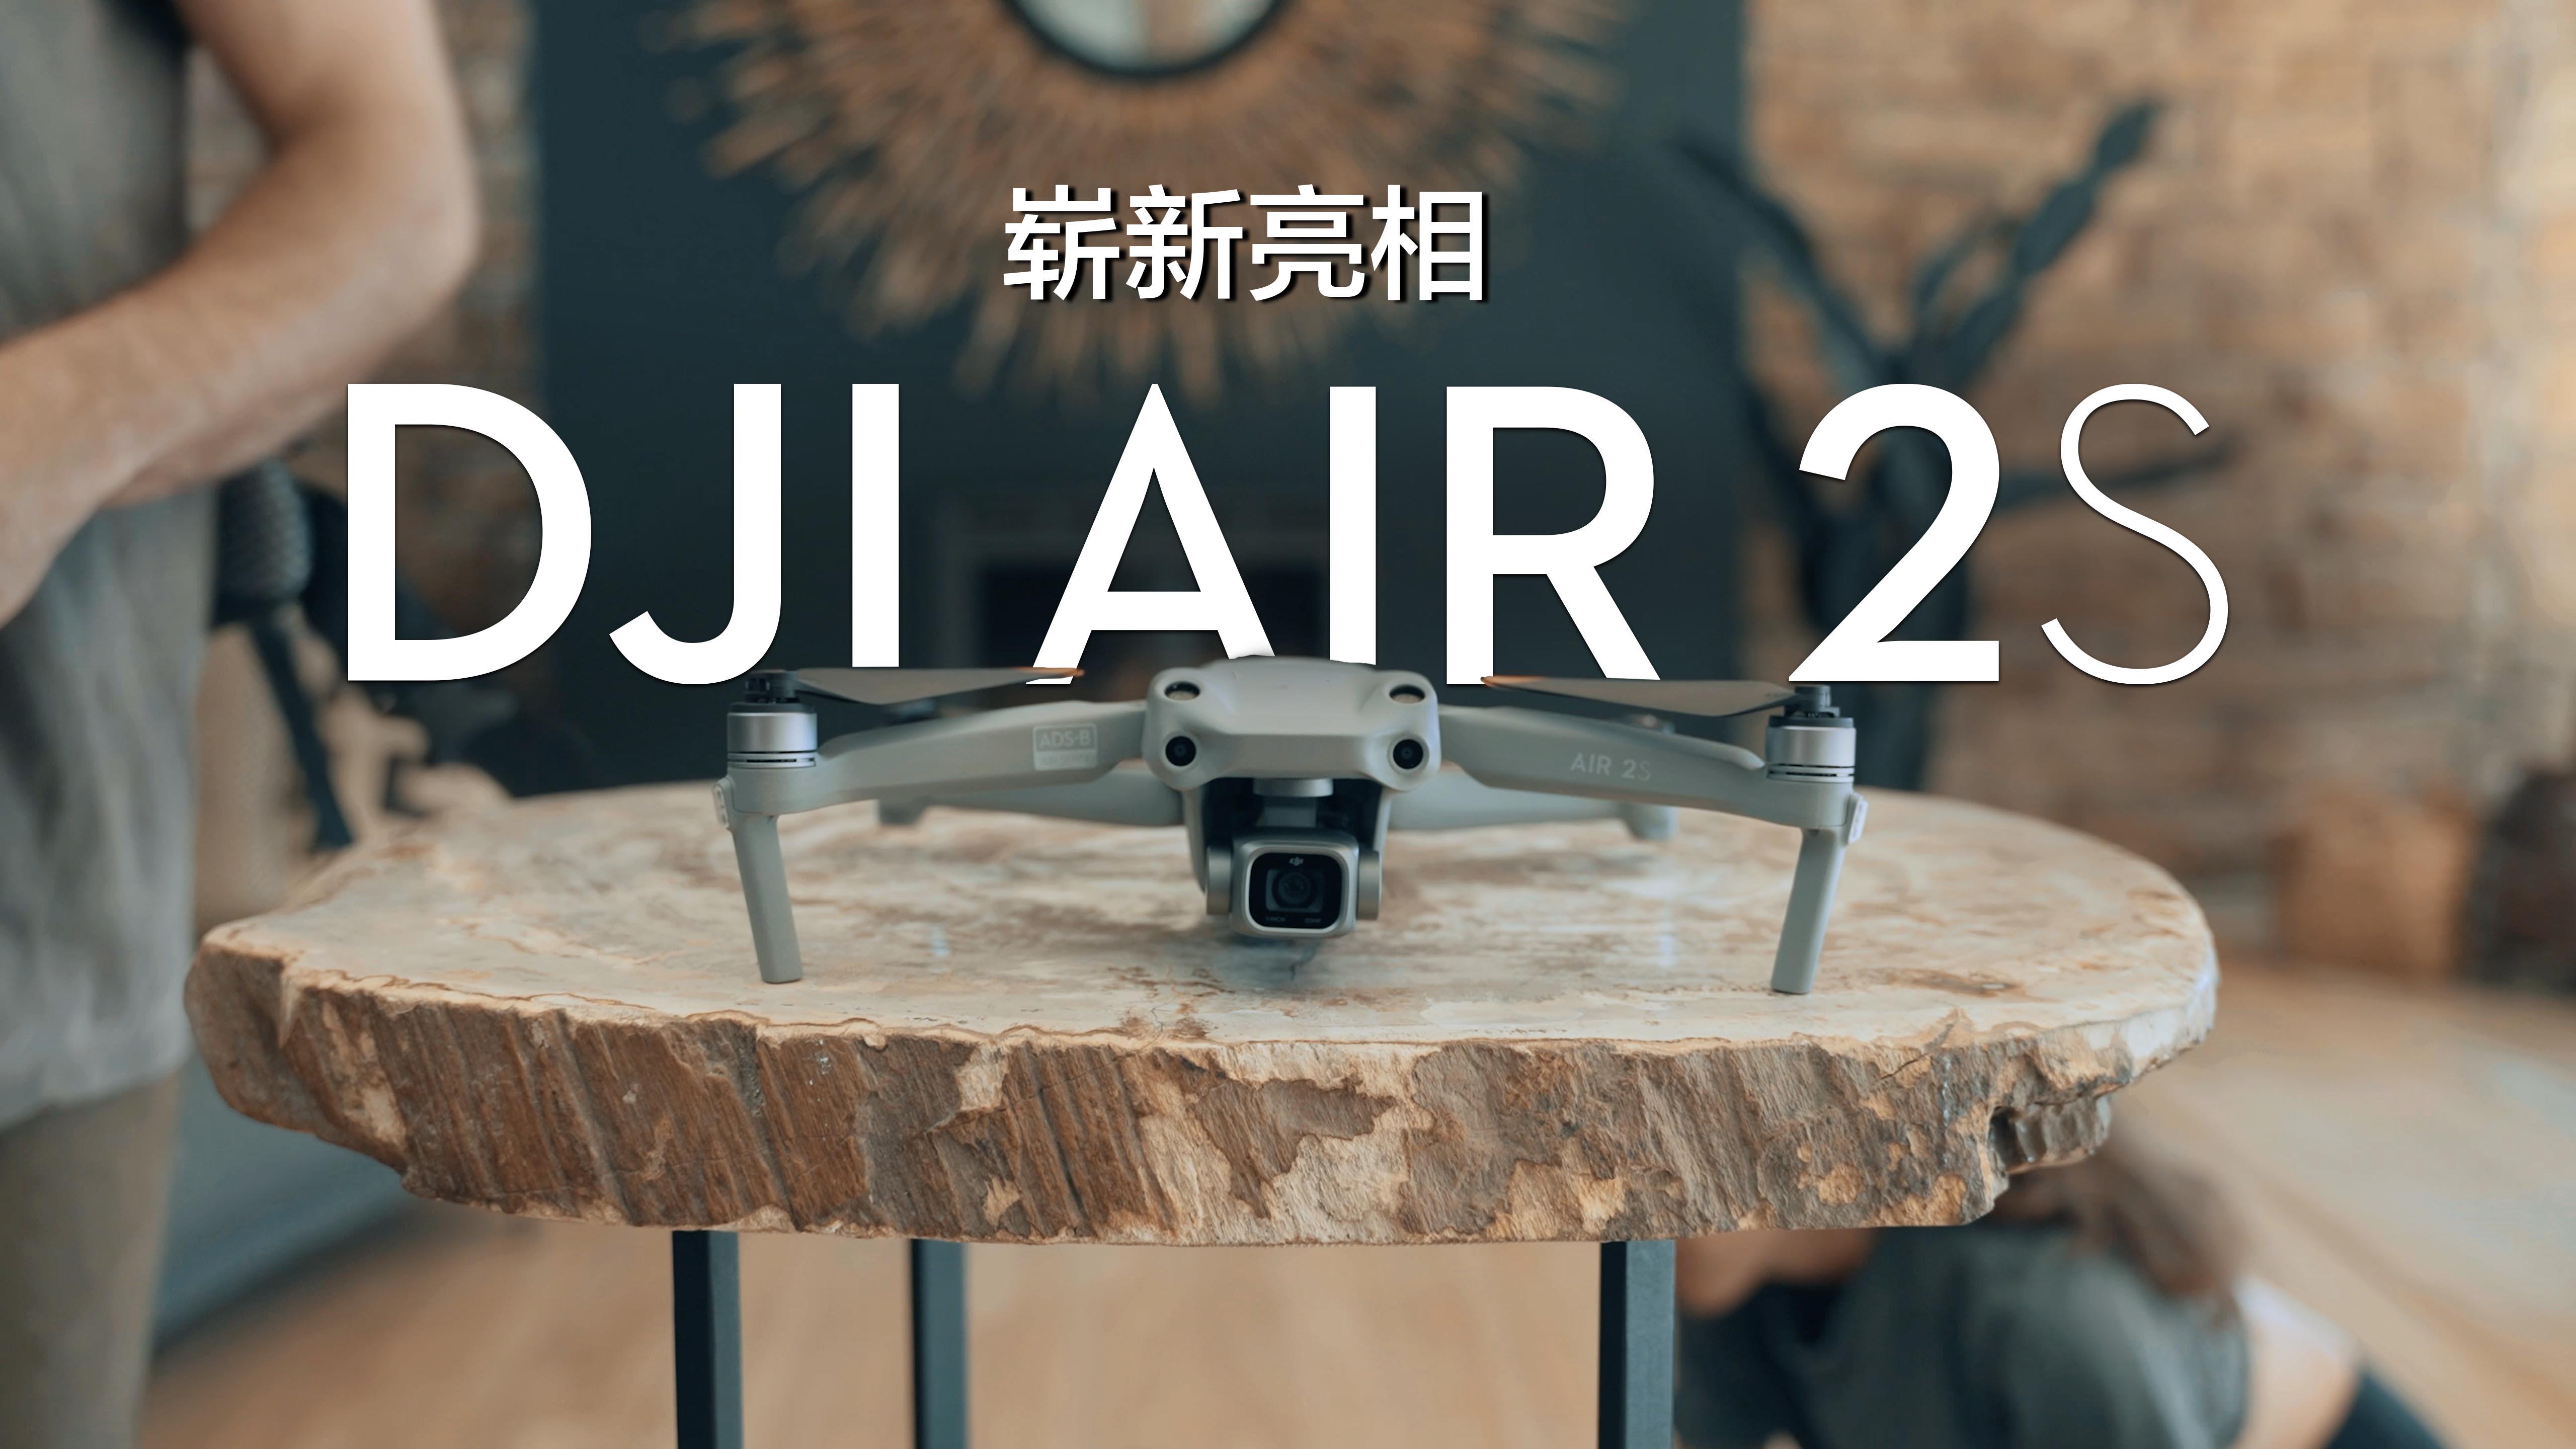 如何评价大疆最新推出的 dji air 2s 无人机,有哪些亮点值得关注?